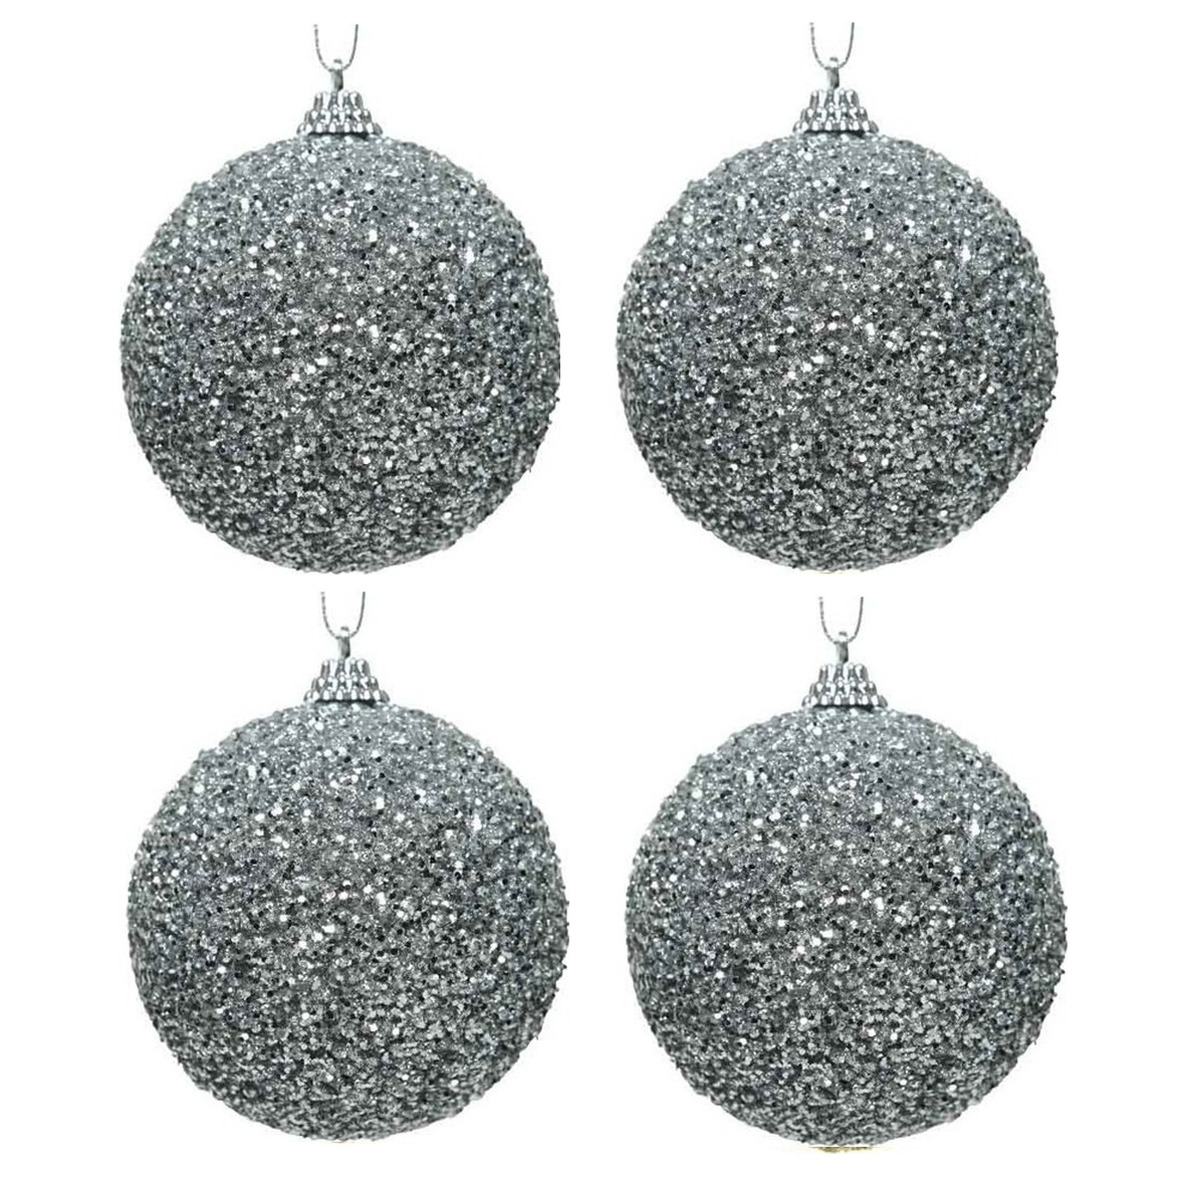 4x Kerstballen zilveren glitters 8 cm met kralen kunststof kerstboom versiering-decoratie